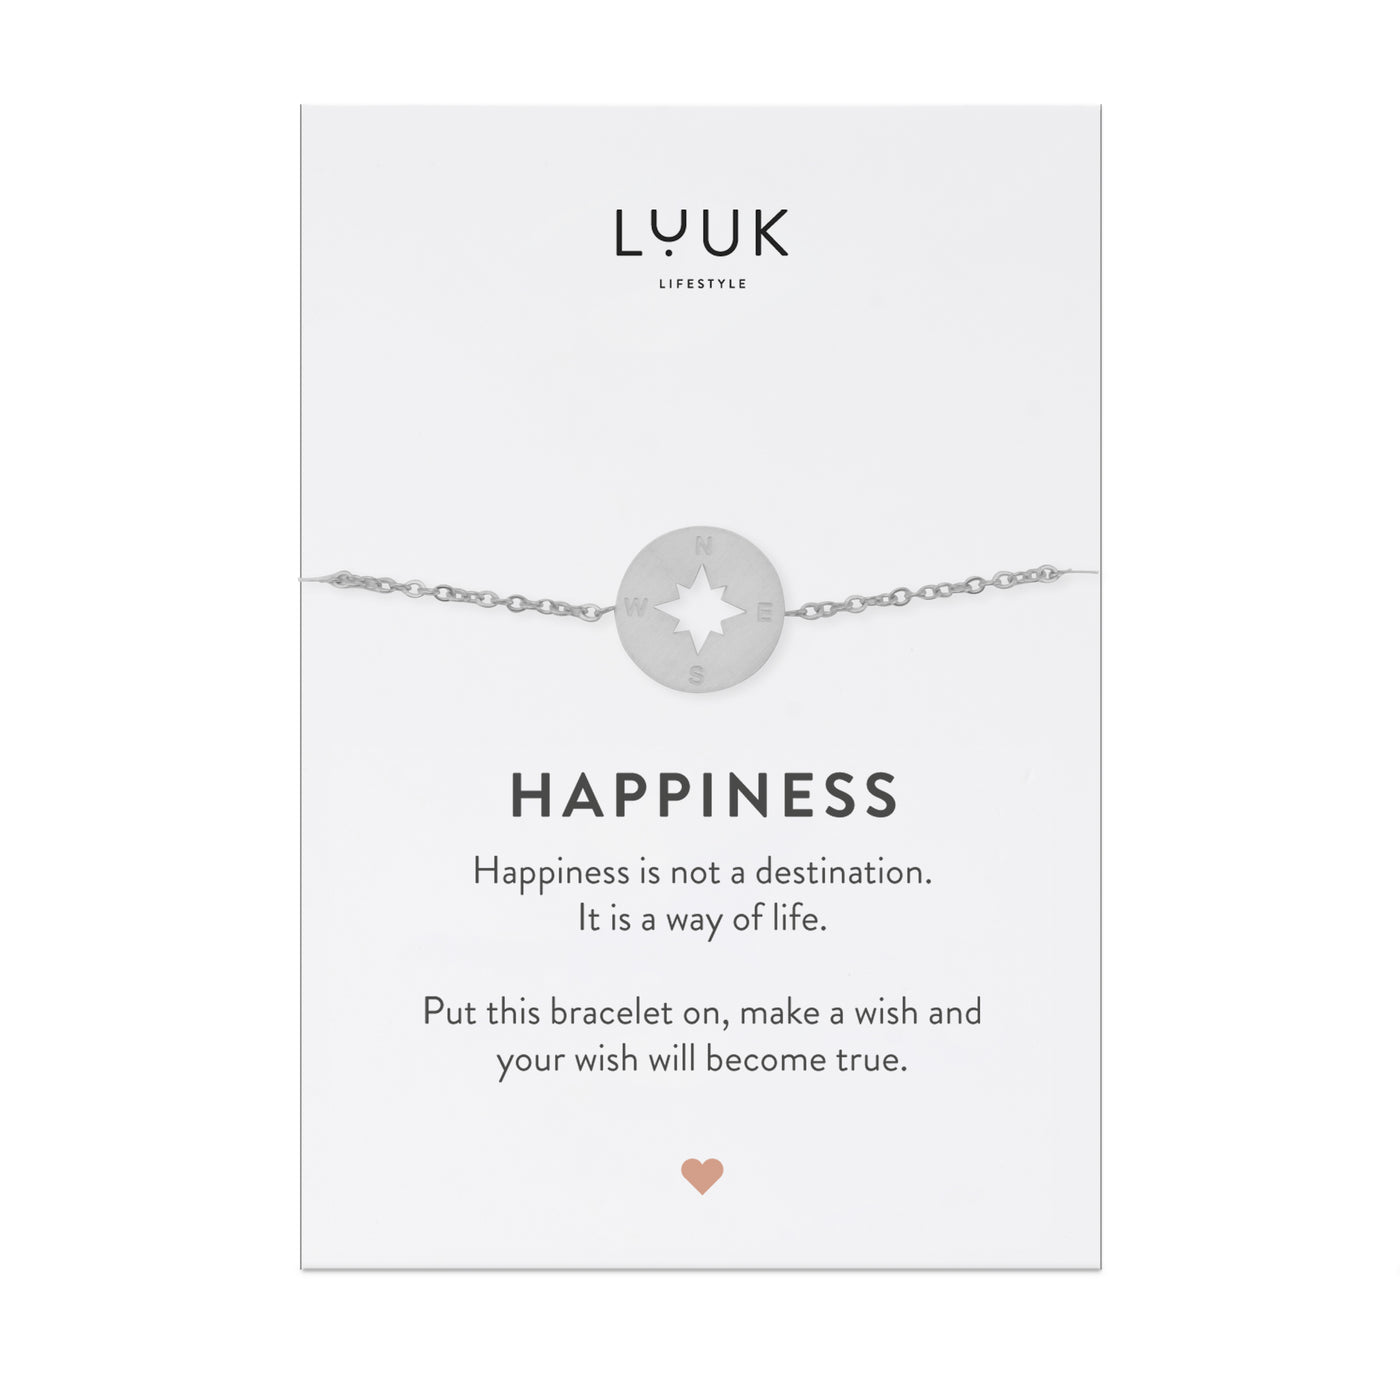 Edelstahl Armband mit Kompass Anhänger auf Happiness Spruchkarte von Luuk Lifestyle 